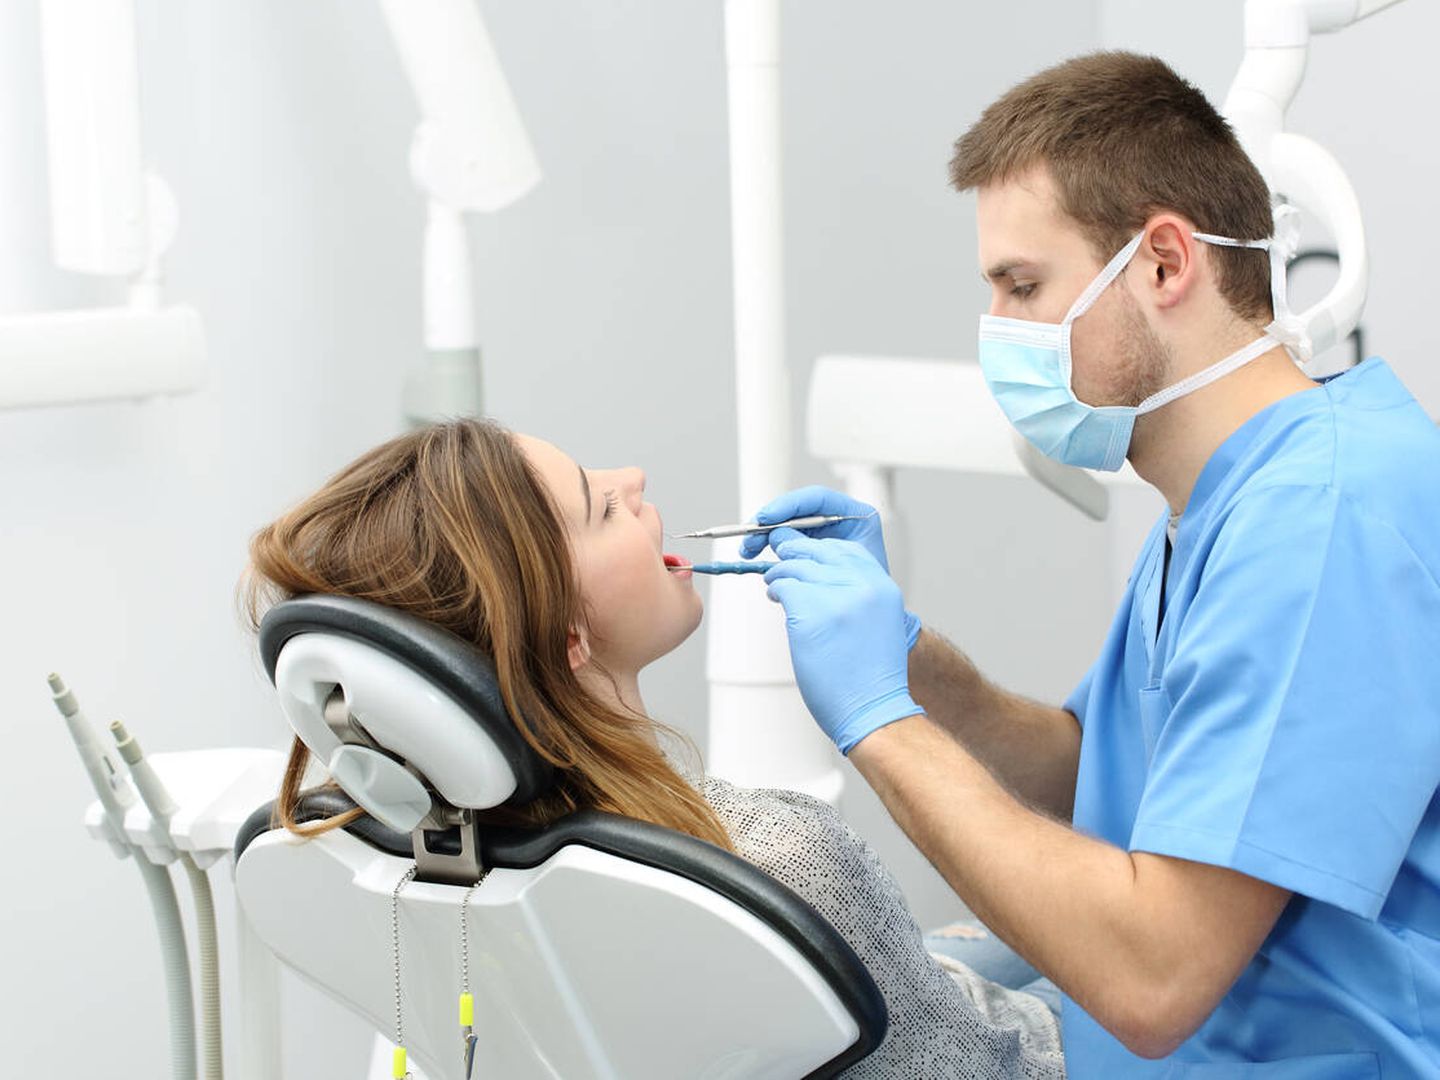 La limpieza bucal profesional es imprescindible para evitar la periodontitis. (iStock)